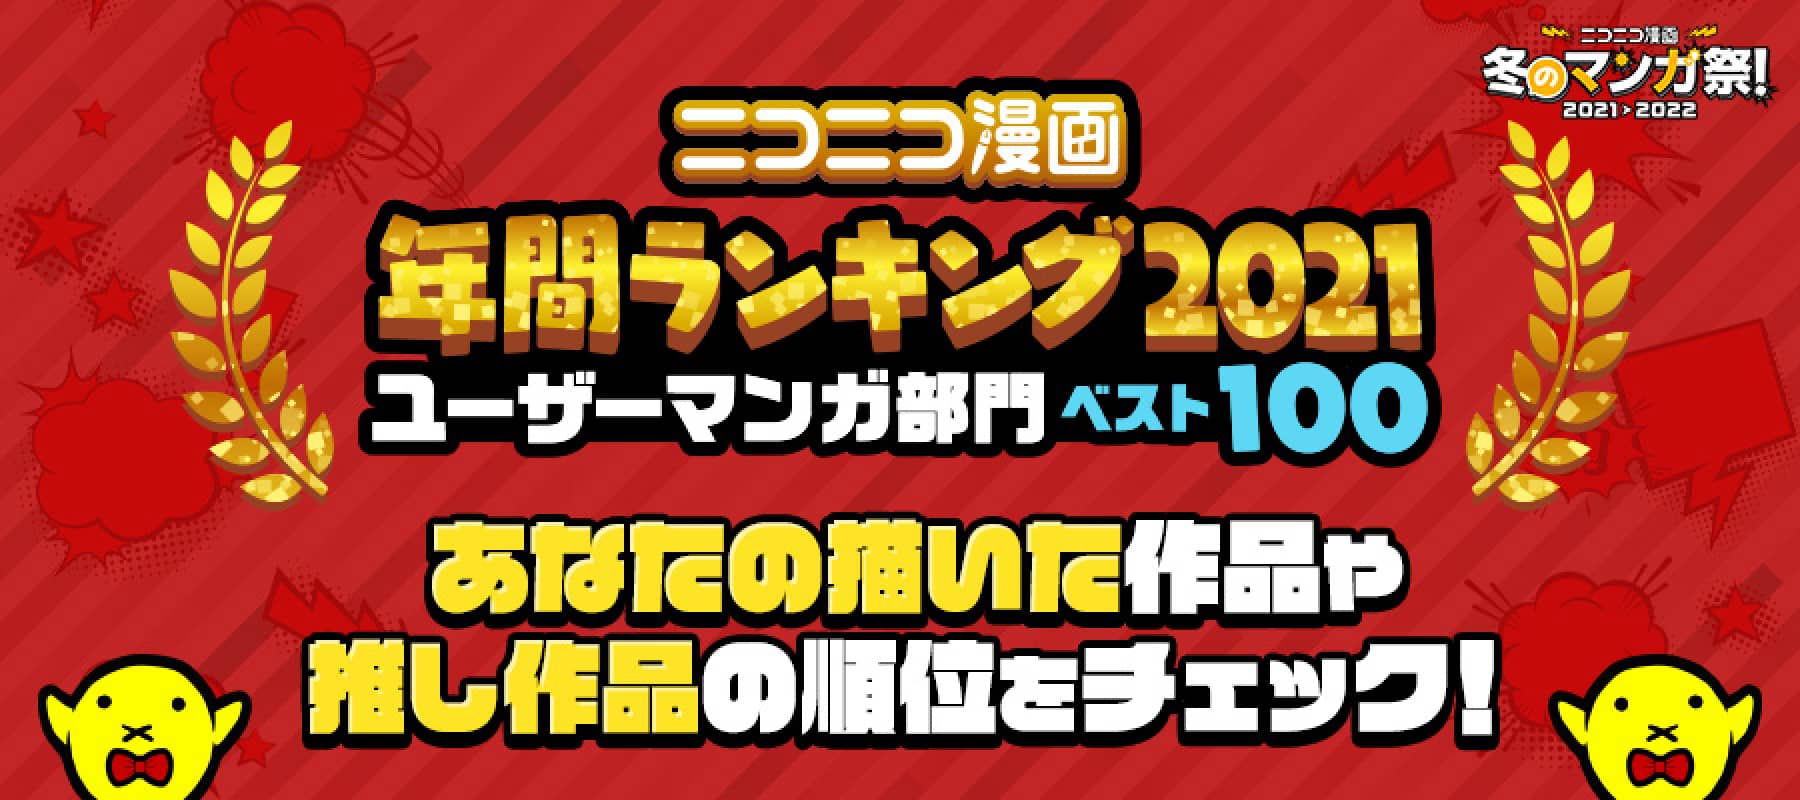 ニコニコ漫画 年間ランキング2021 ユーザーマンガ部門ベスト100